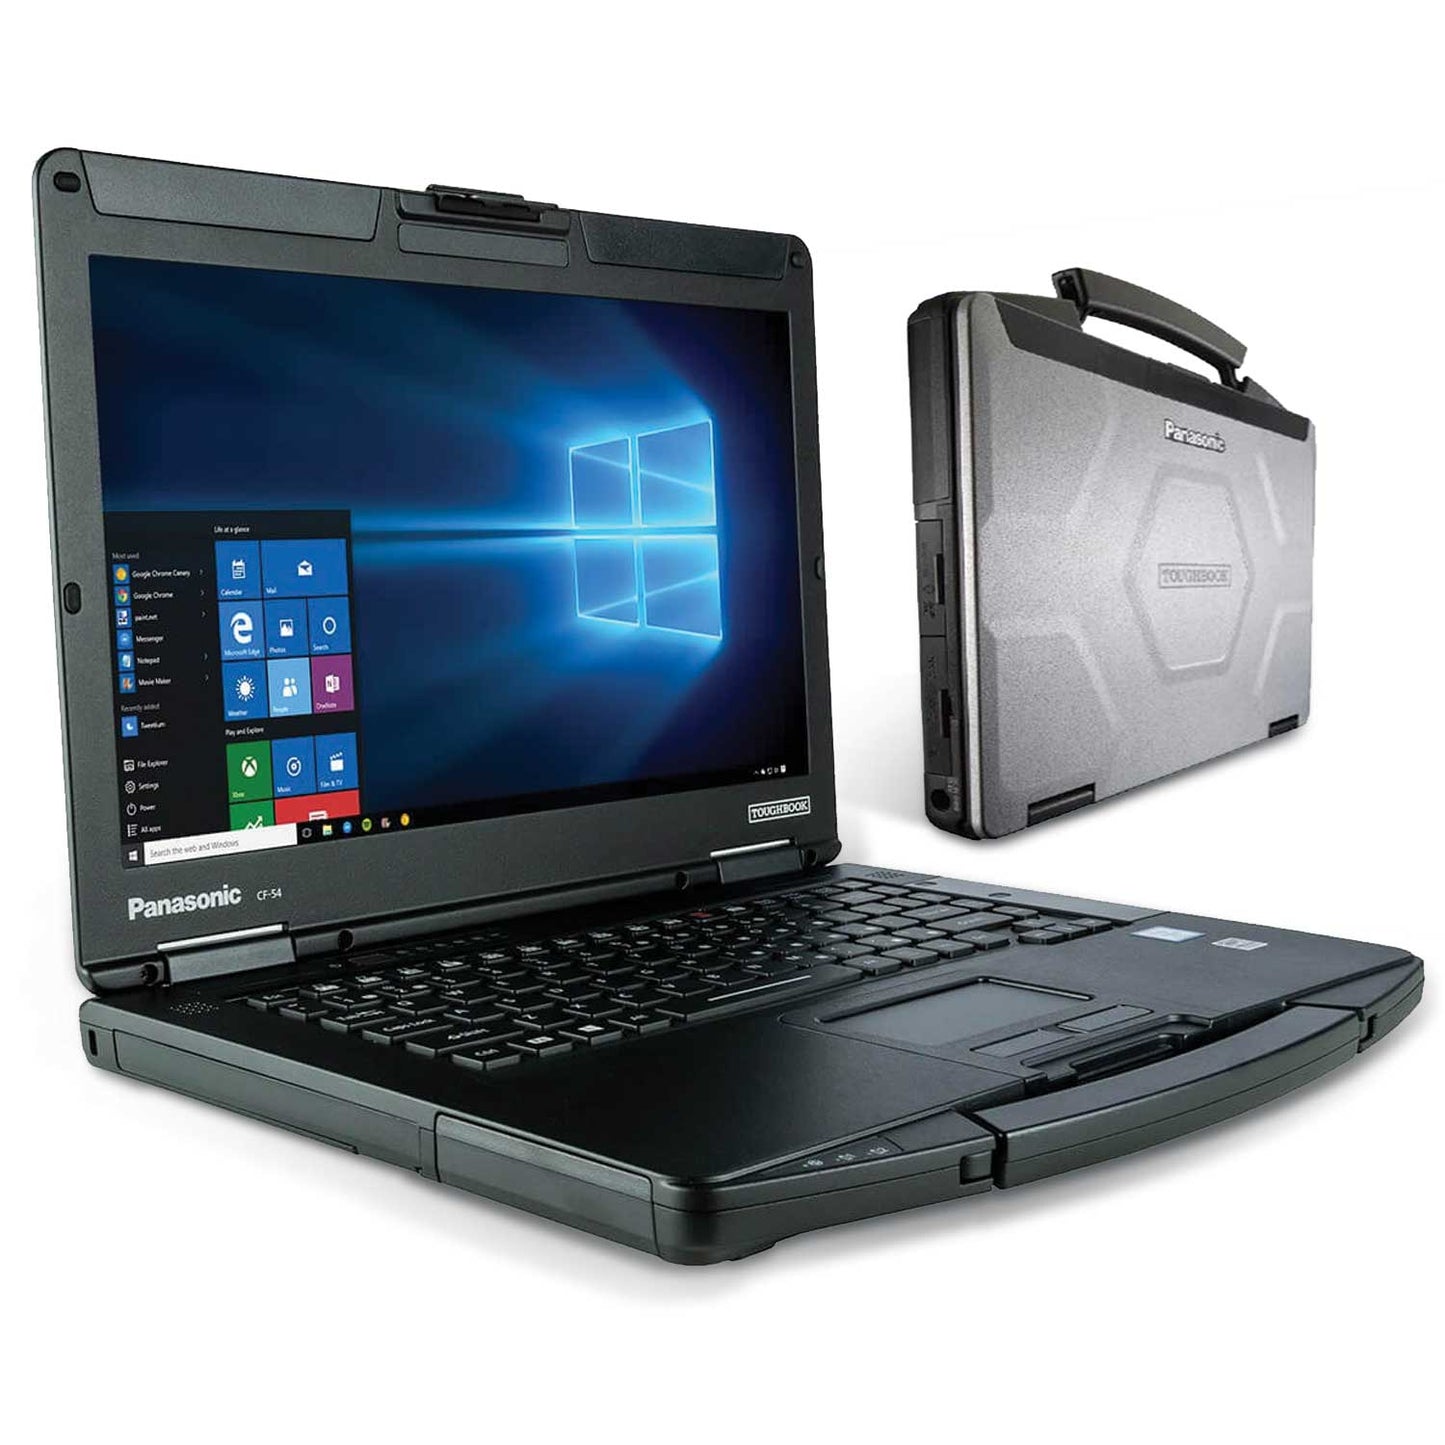 
                  
                    Laptop genuina NEXIQ USB 3 y CF -54 LAPTOP LISTA PARA TRABAJO - Complete un kit de diagnóstico de servicio pesado universal 2021 2021
                  
                